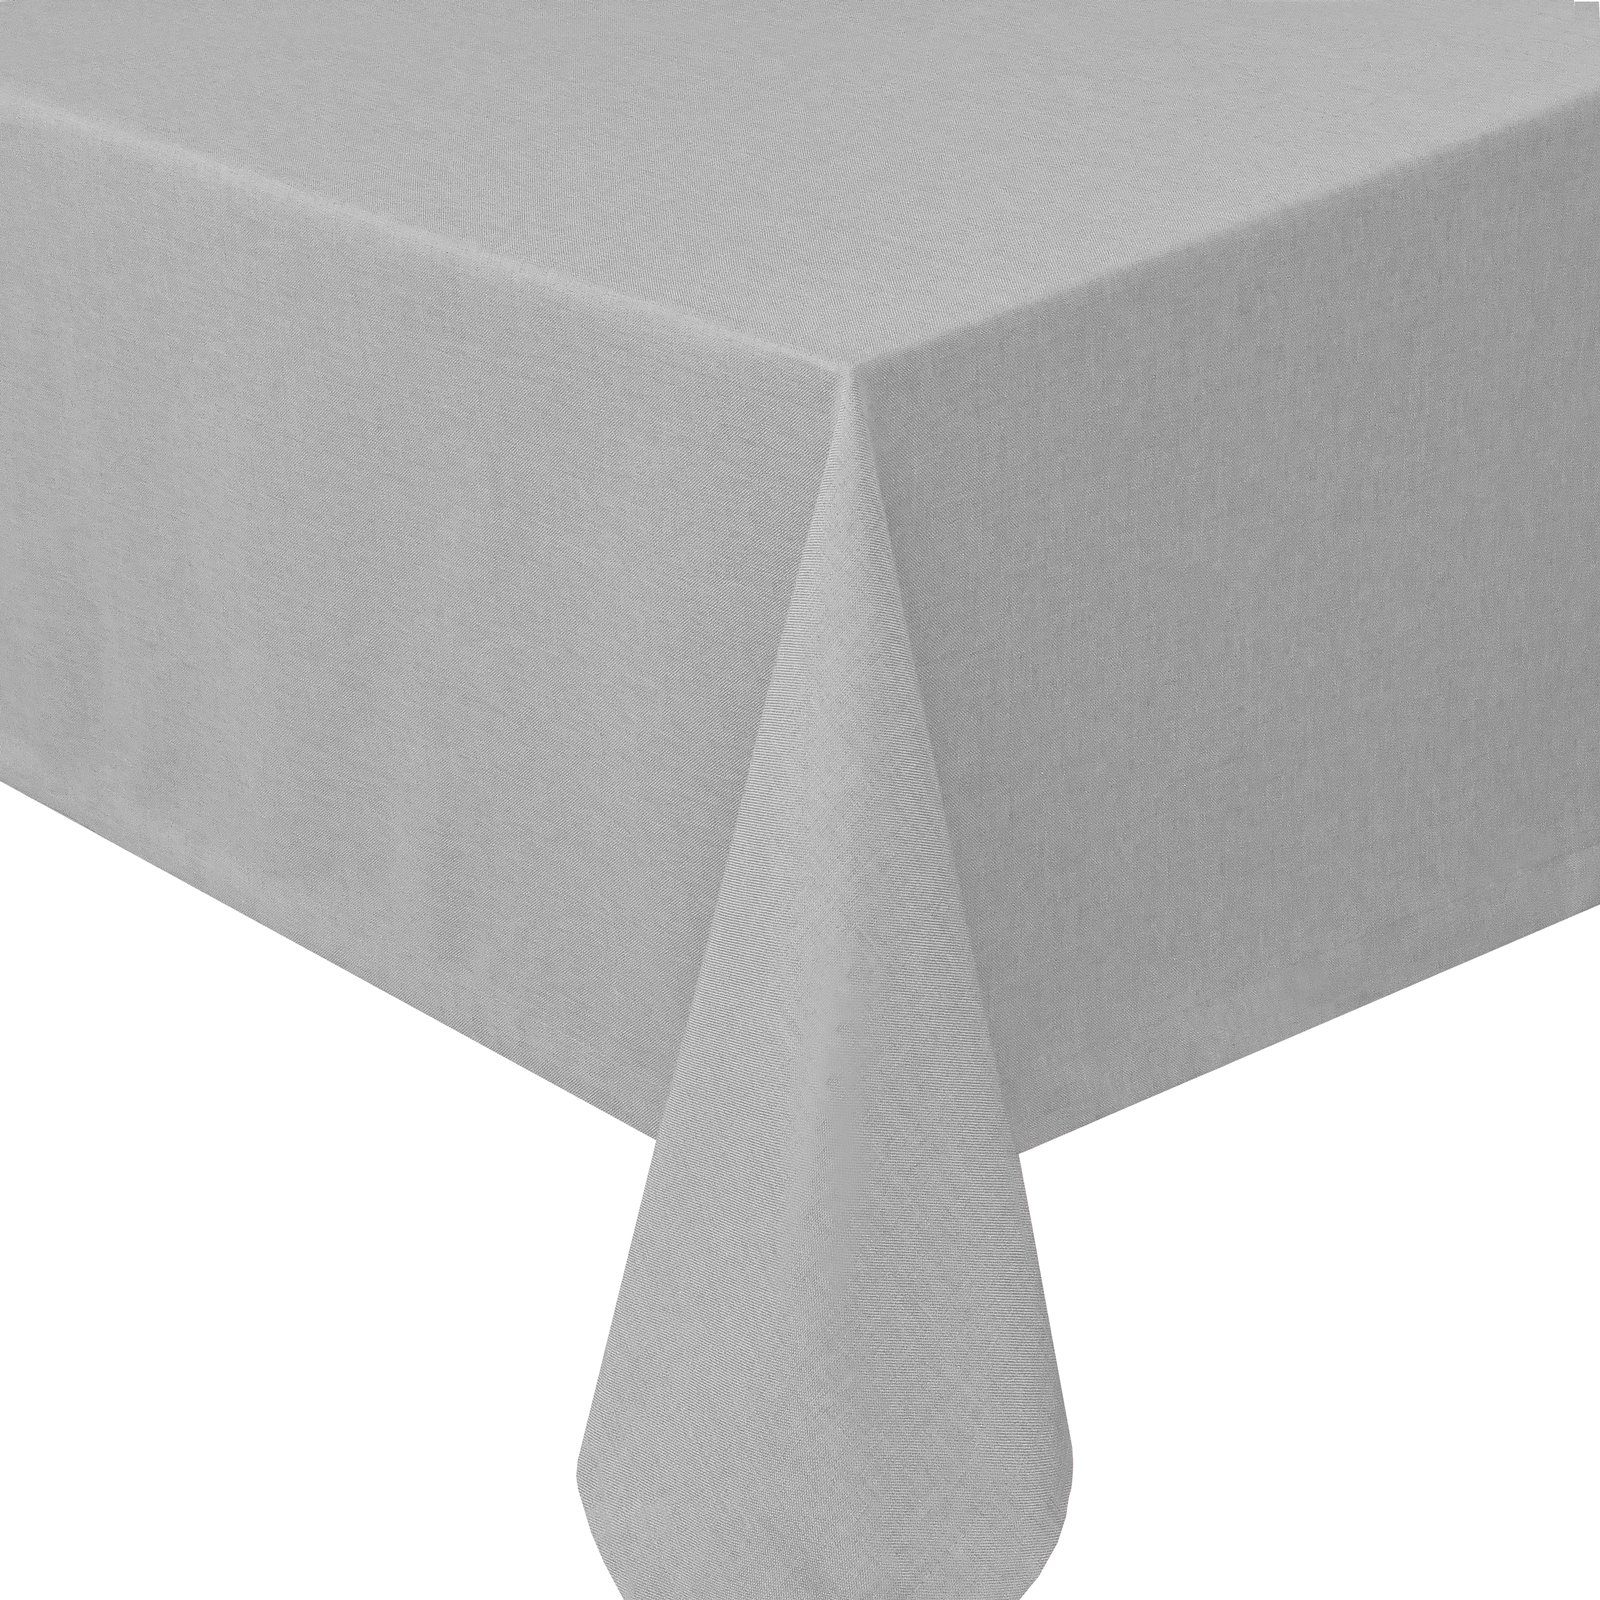 Tischdecke pflegeleicht schmutzabweisend tafeltuch Leinenstruktur abwaschbar Hellgrau Fiora Leinen Optik Lotuseffekt Tischdecke Tischtuch